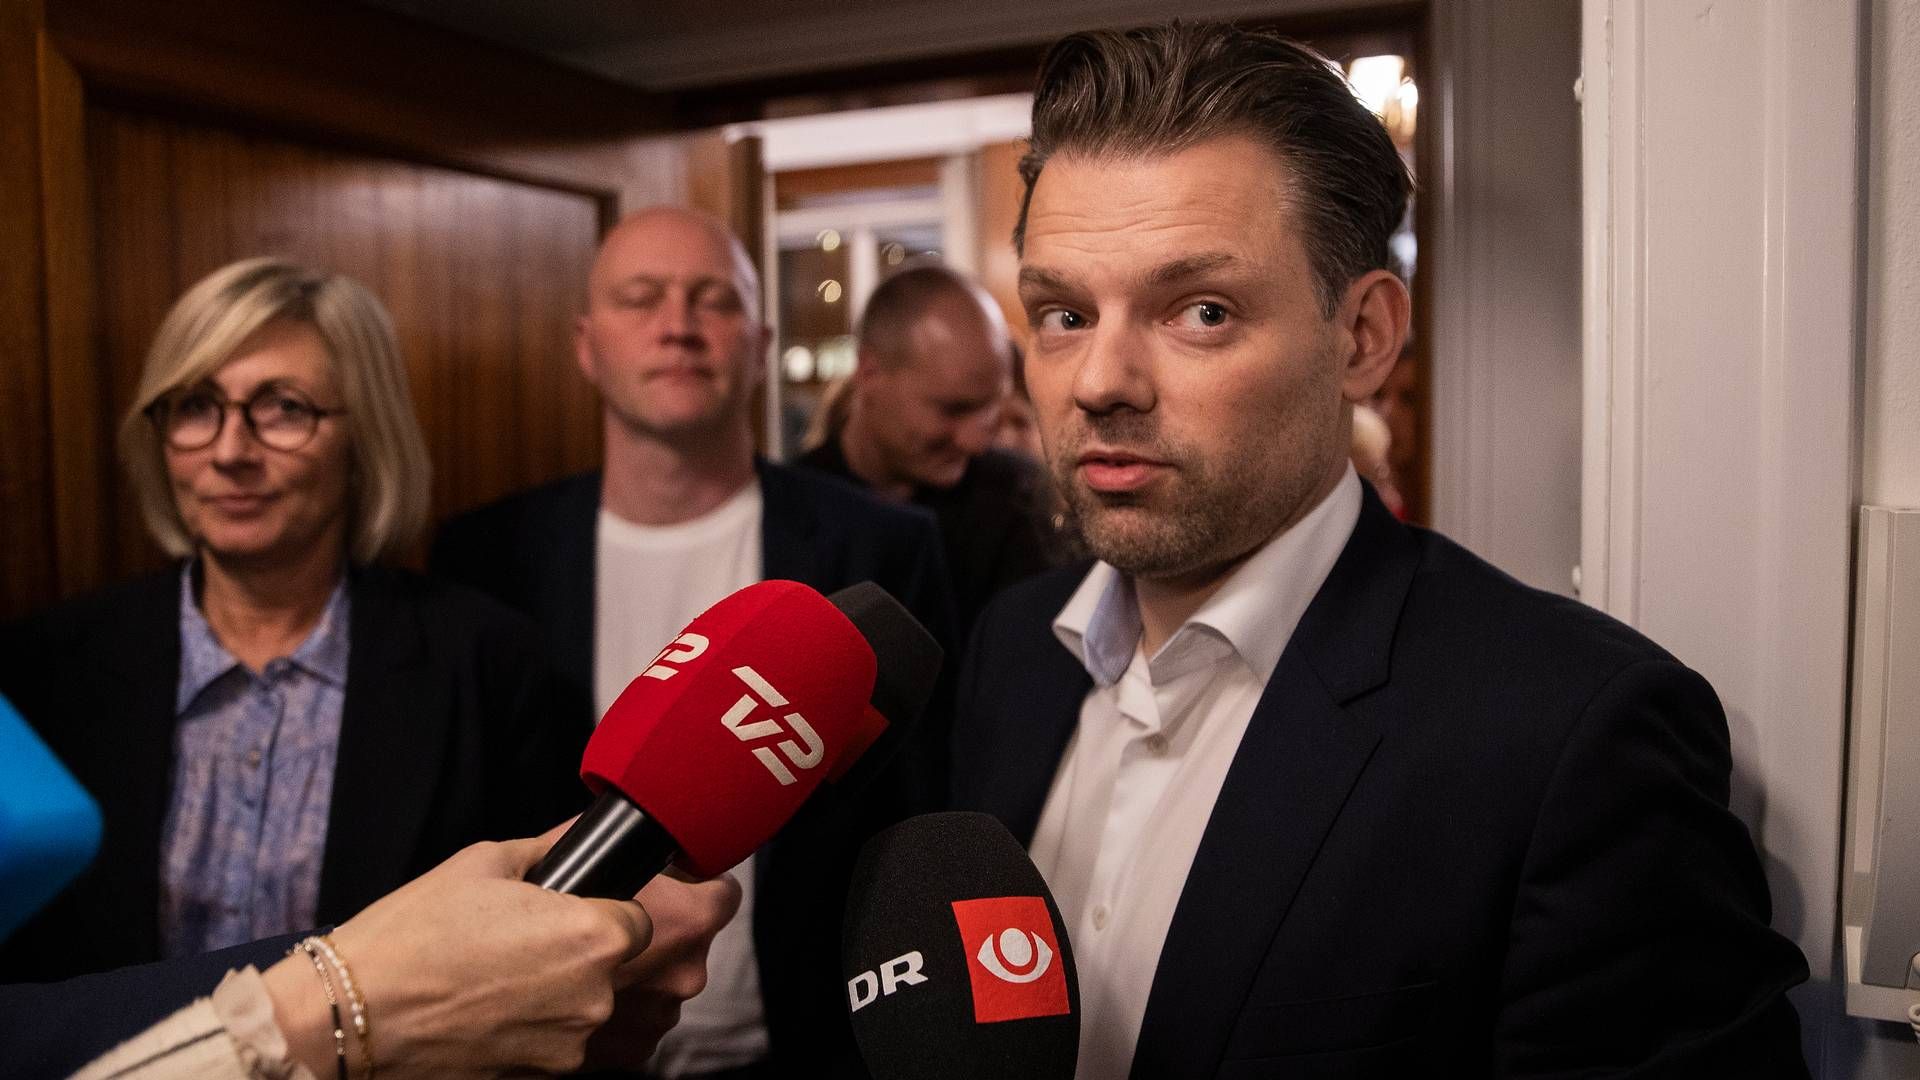 Michael Vindfeldt fik masser af medieopmærksomhed, da han afsluttede mere end 100 års konservativt styre på Frederiksberg ved kommunalvalget i 2021. | Foto: Finn Frandsen